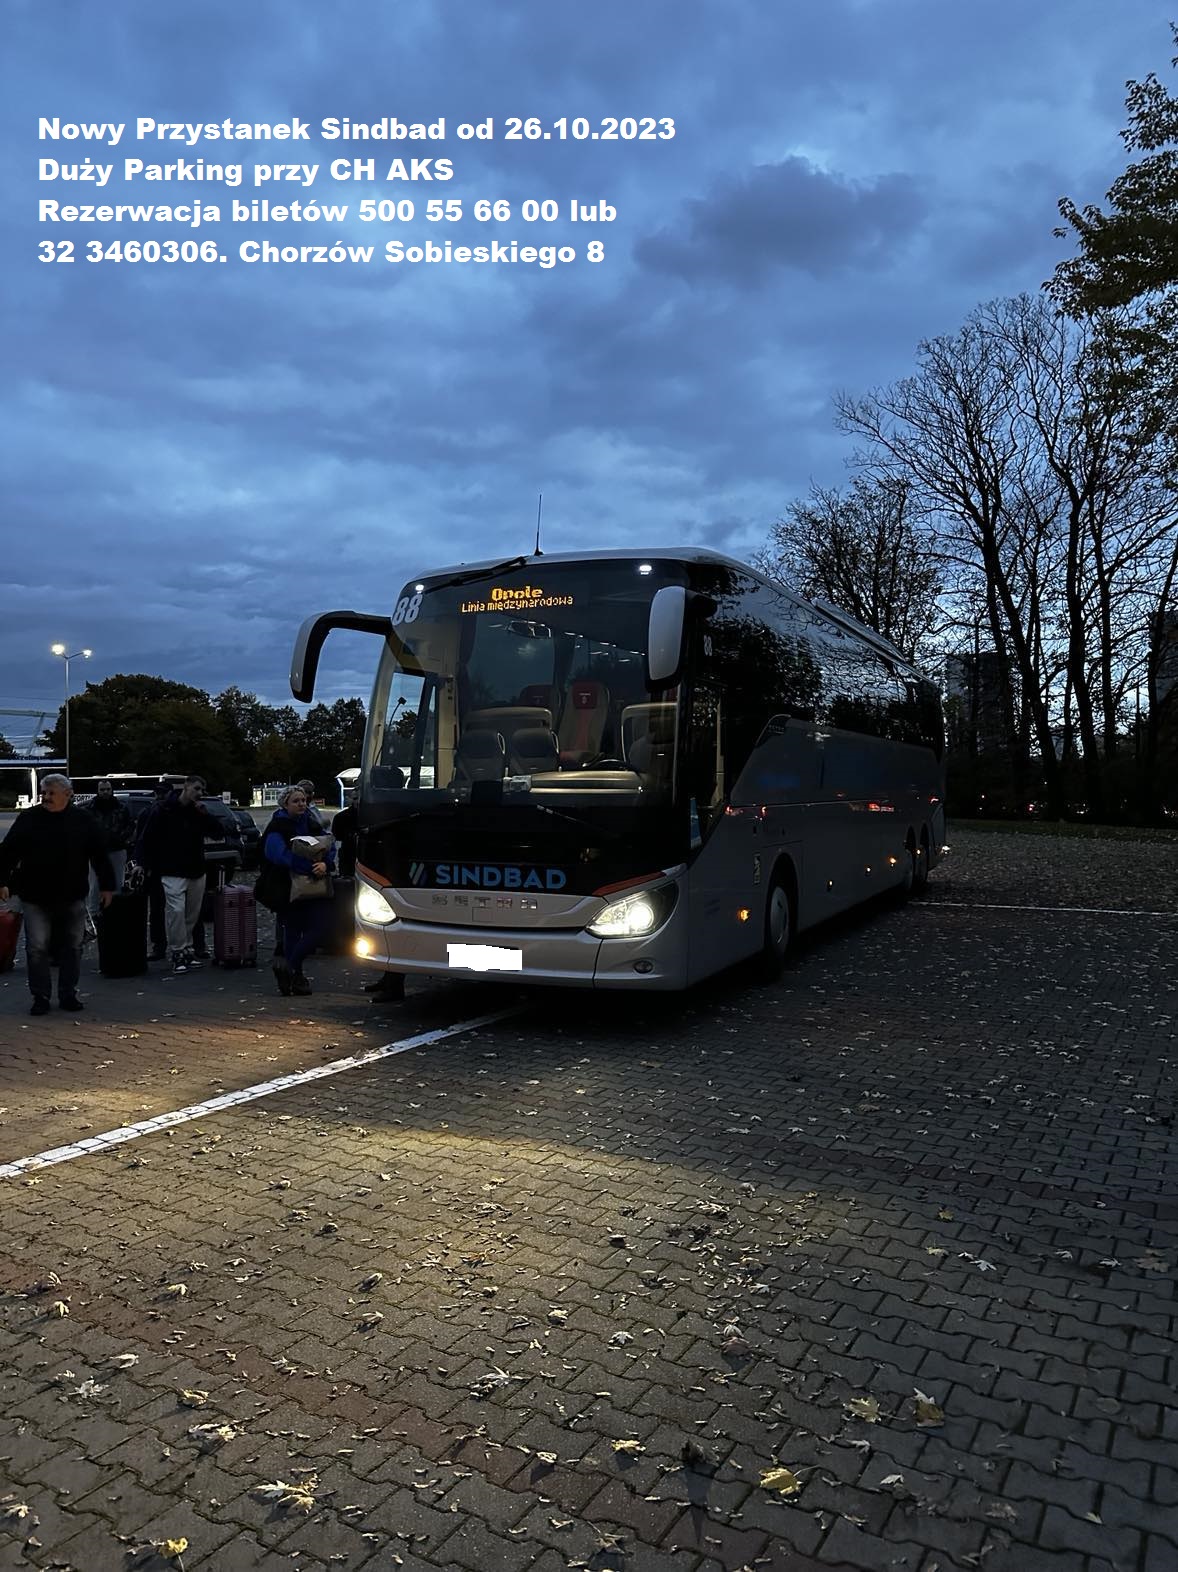 Bilety Autobusowe Sindbad do Niemiec oferuje Geotour Chorzów